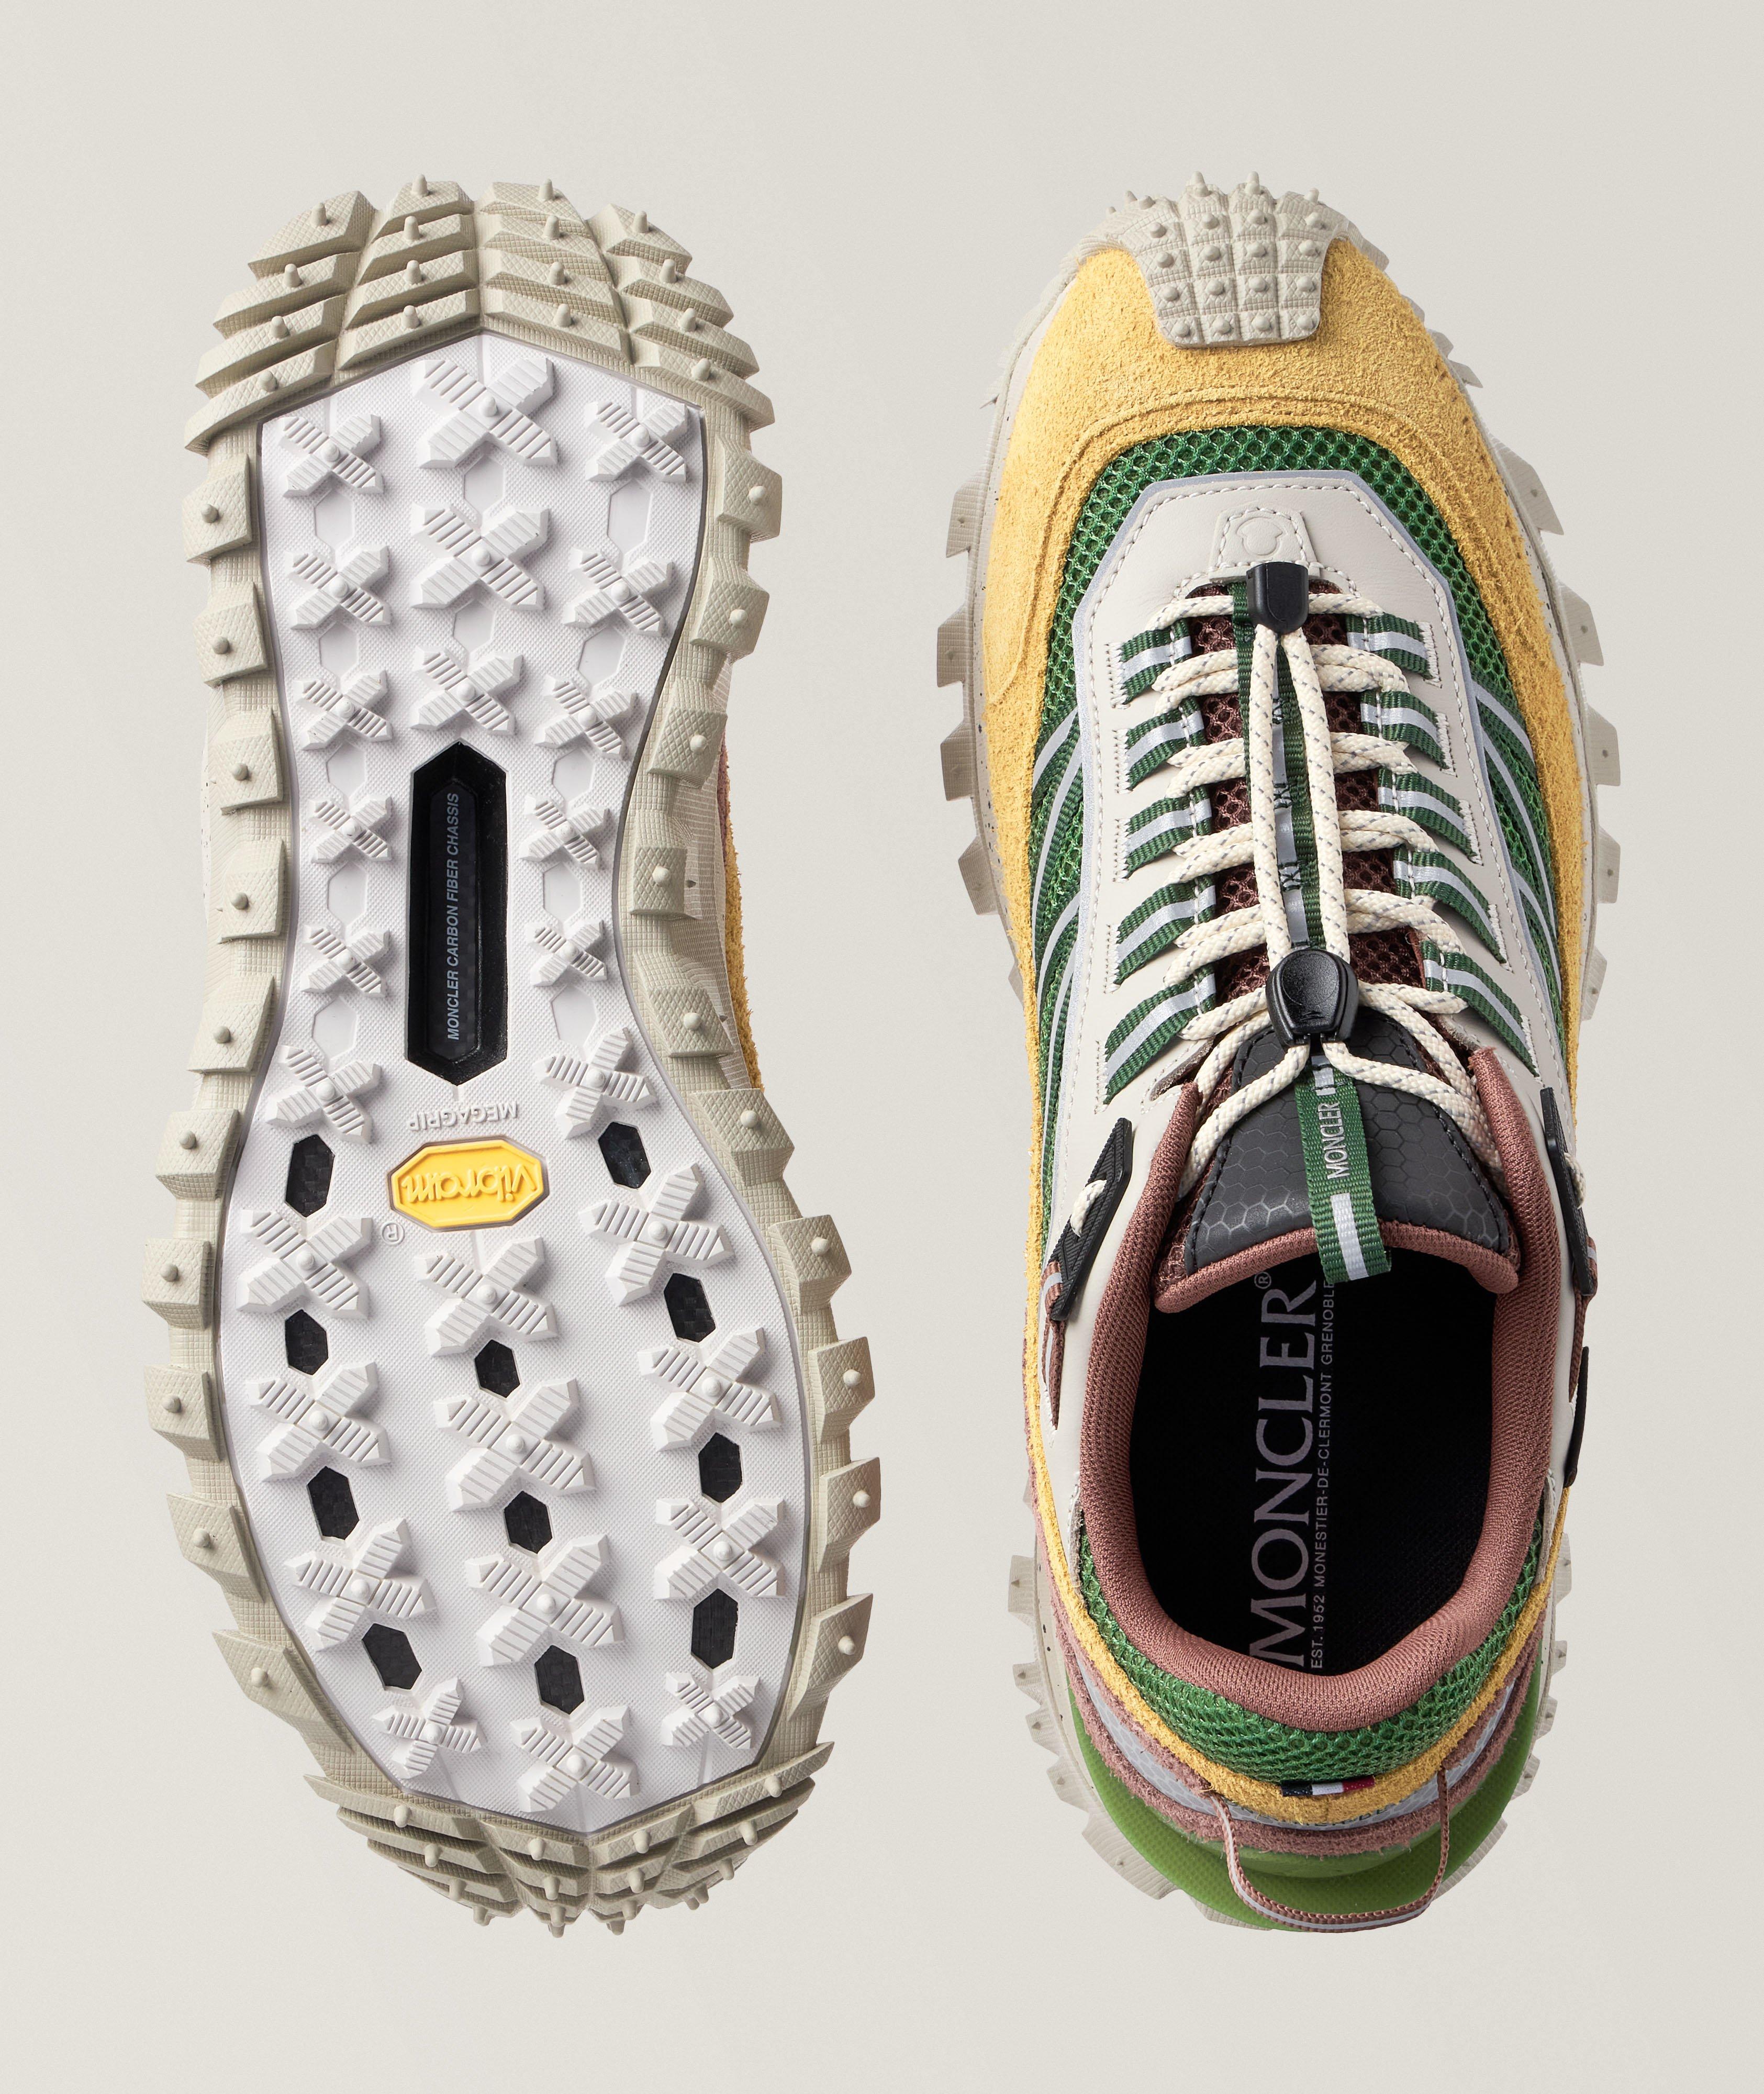 Chaussure sport Trailgrip aux textures variées image 2